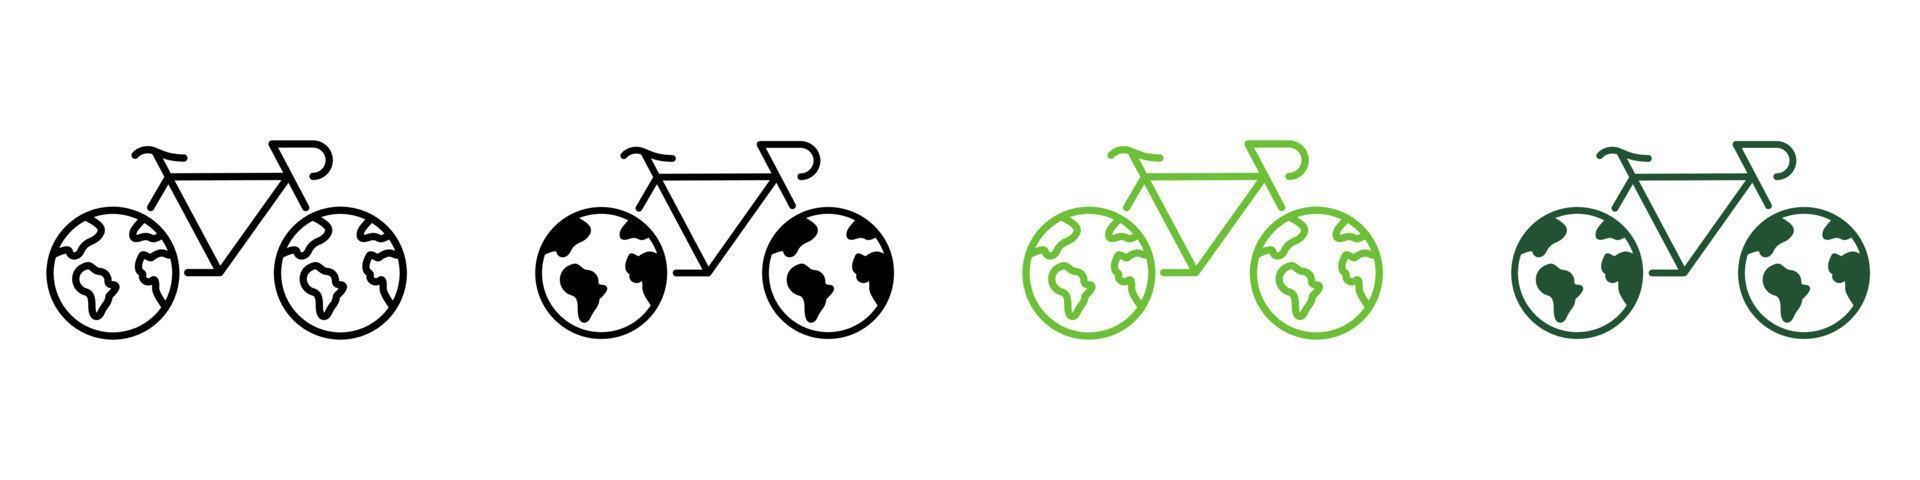 Fahrrad mit Rädern in Planetenerde Formlinie und Silhouette Symbol Farbsatz. Piktogramm. umweltfreundliche transportsymbolsammlung auf weißem hintergrund. ökologisches Fahrrad. isolierte Vektorillustration. vektor